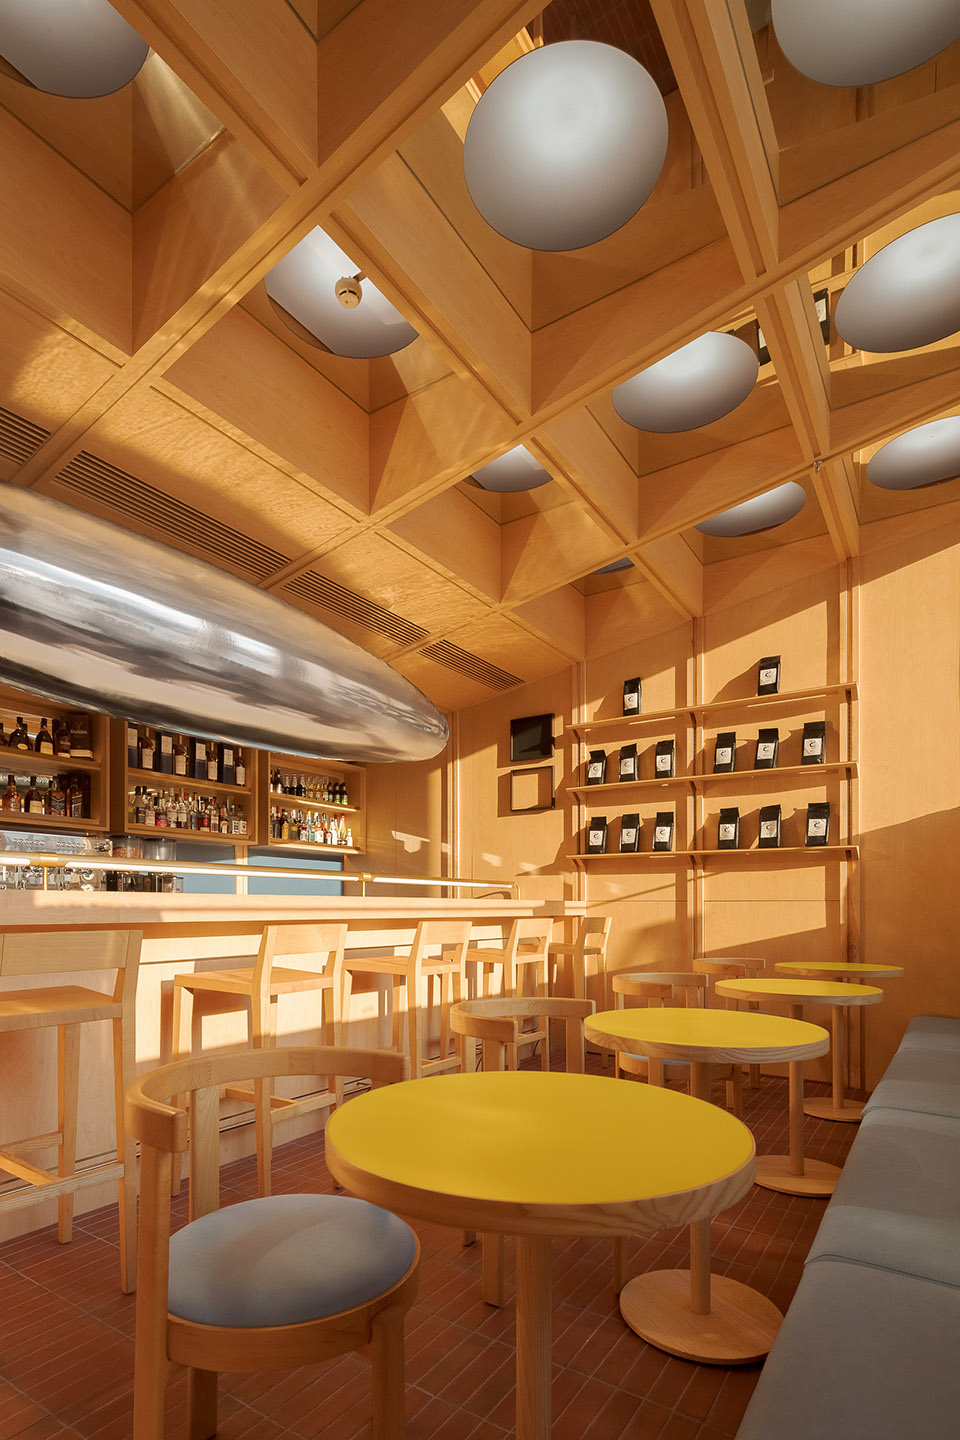 浮廊C2 Cafe &  Bar咖啡厅，深圳/专门为年轻人打造的“空中楼阁”-3